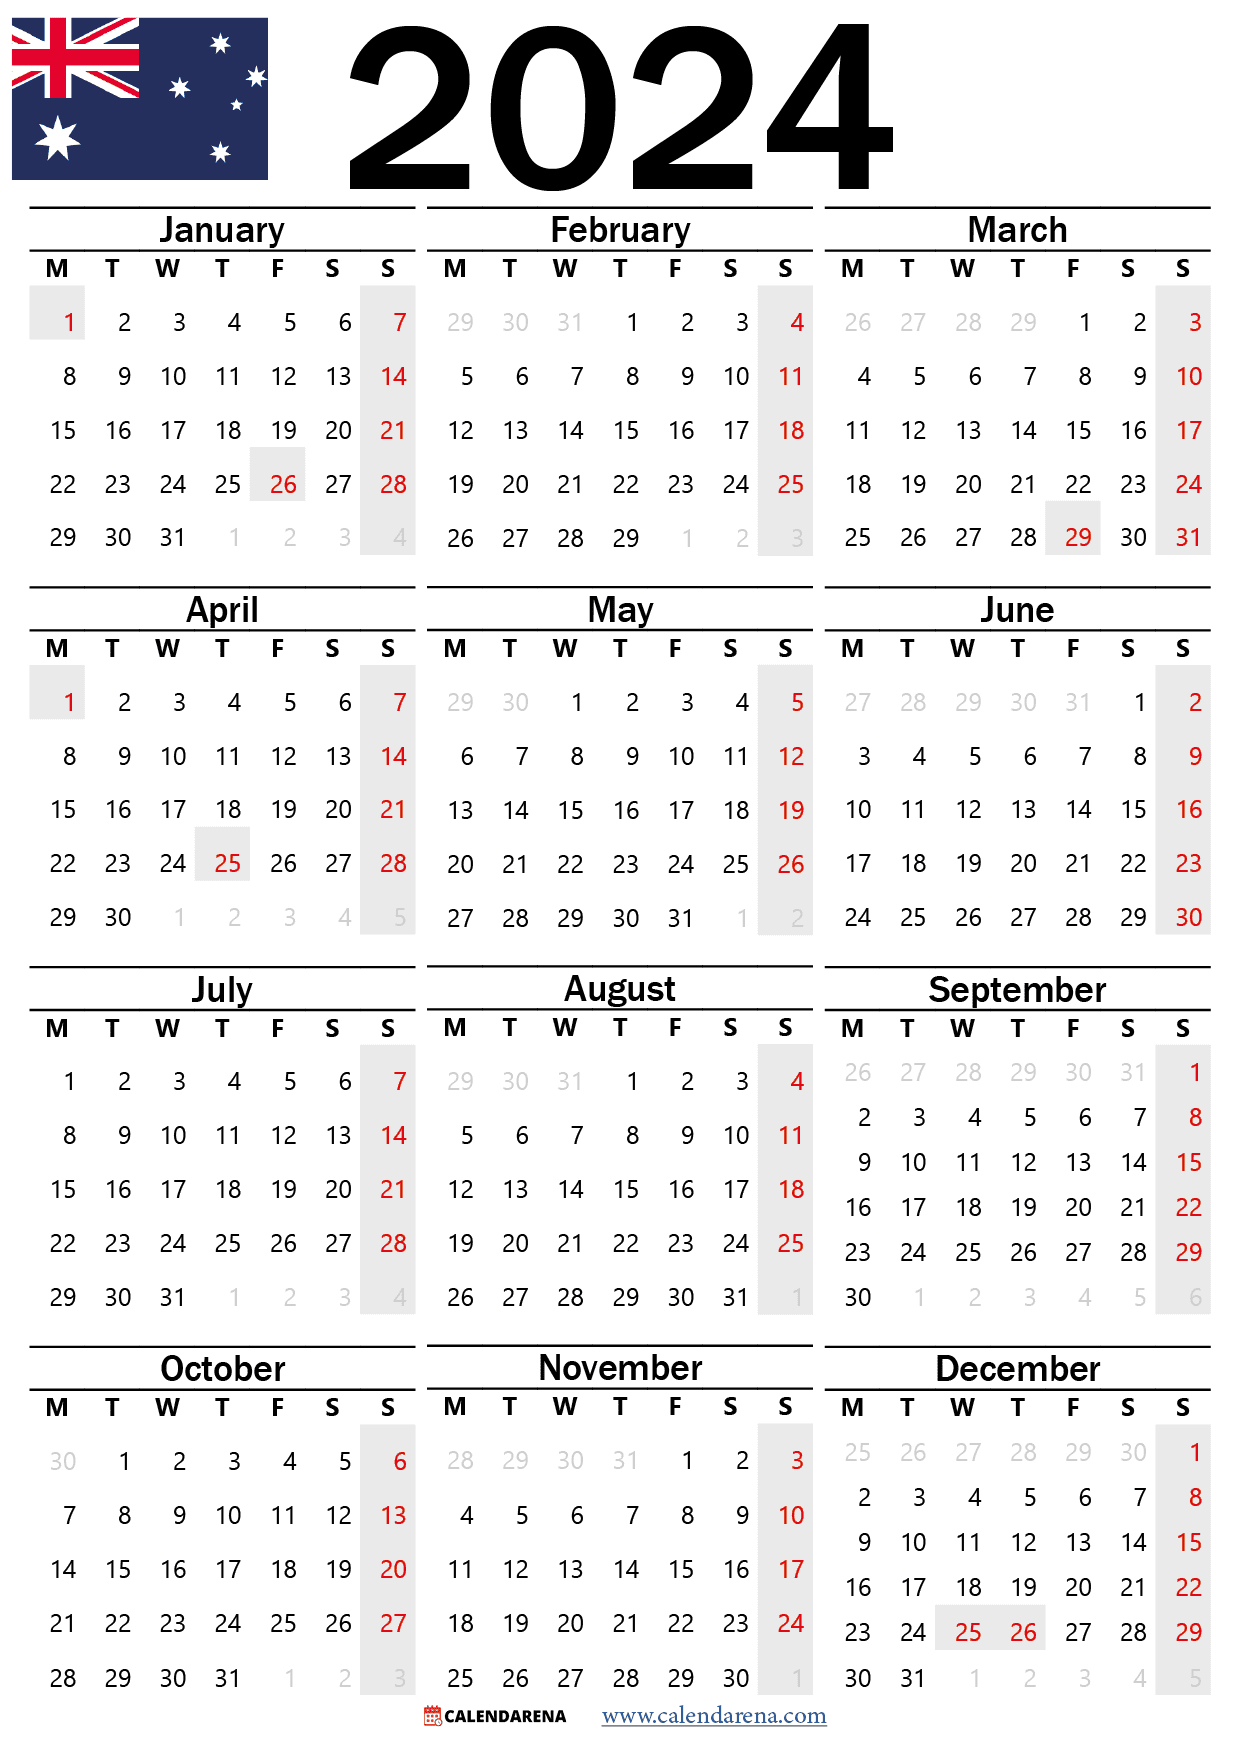 Calendar 2024 Australia With Holidays And Festivals | 2024 Calendar with Holidays Australia Printable